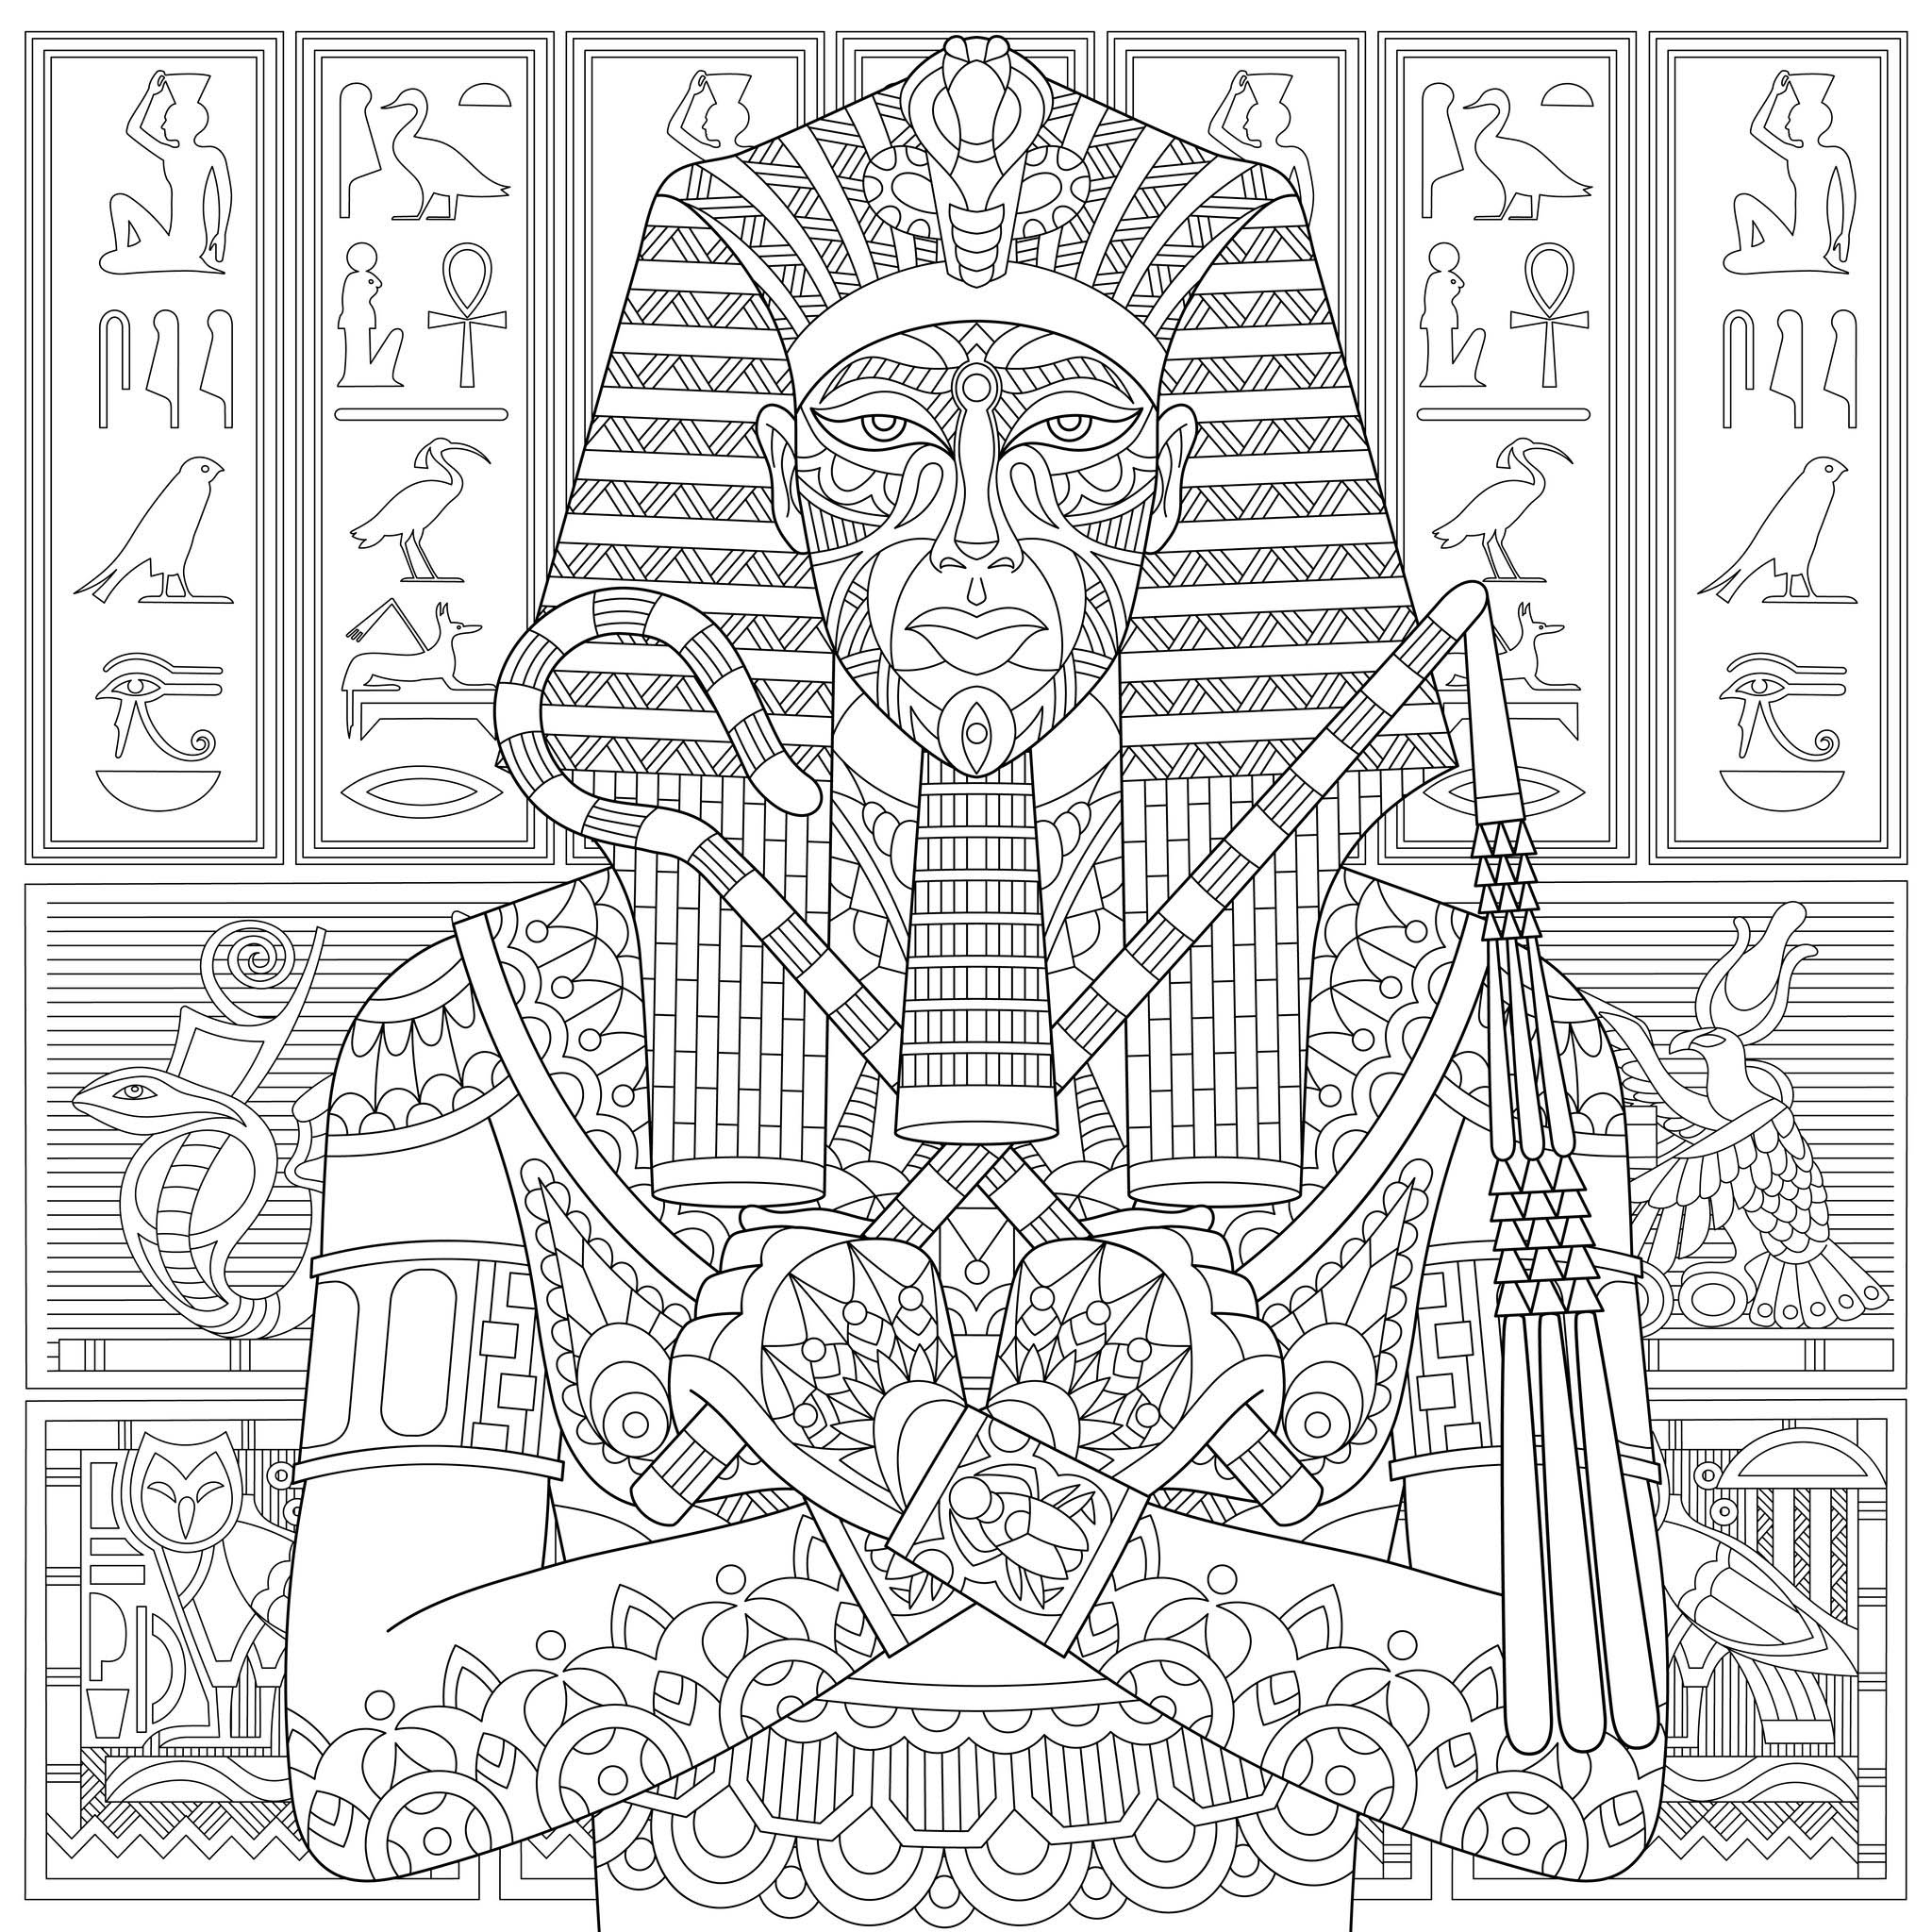 O Faraó e os hieróglifos: um esquema de coloração muito complexo